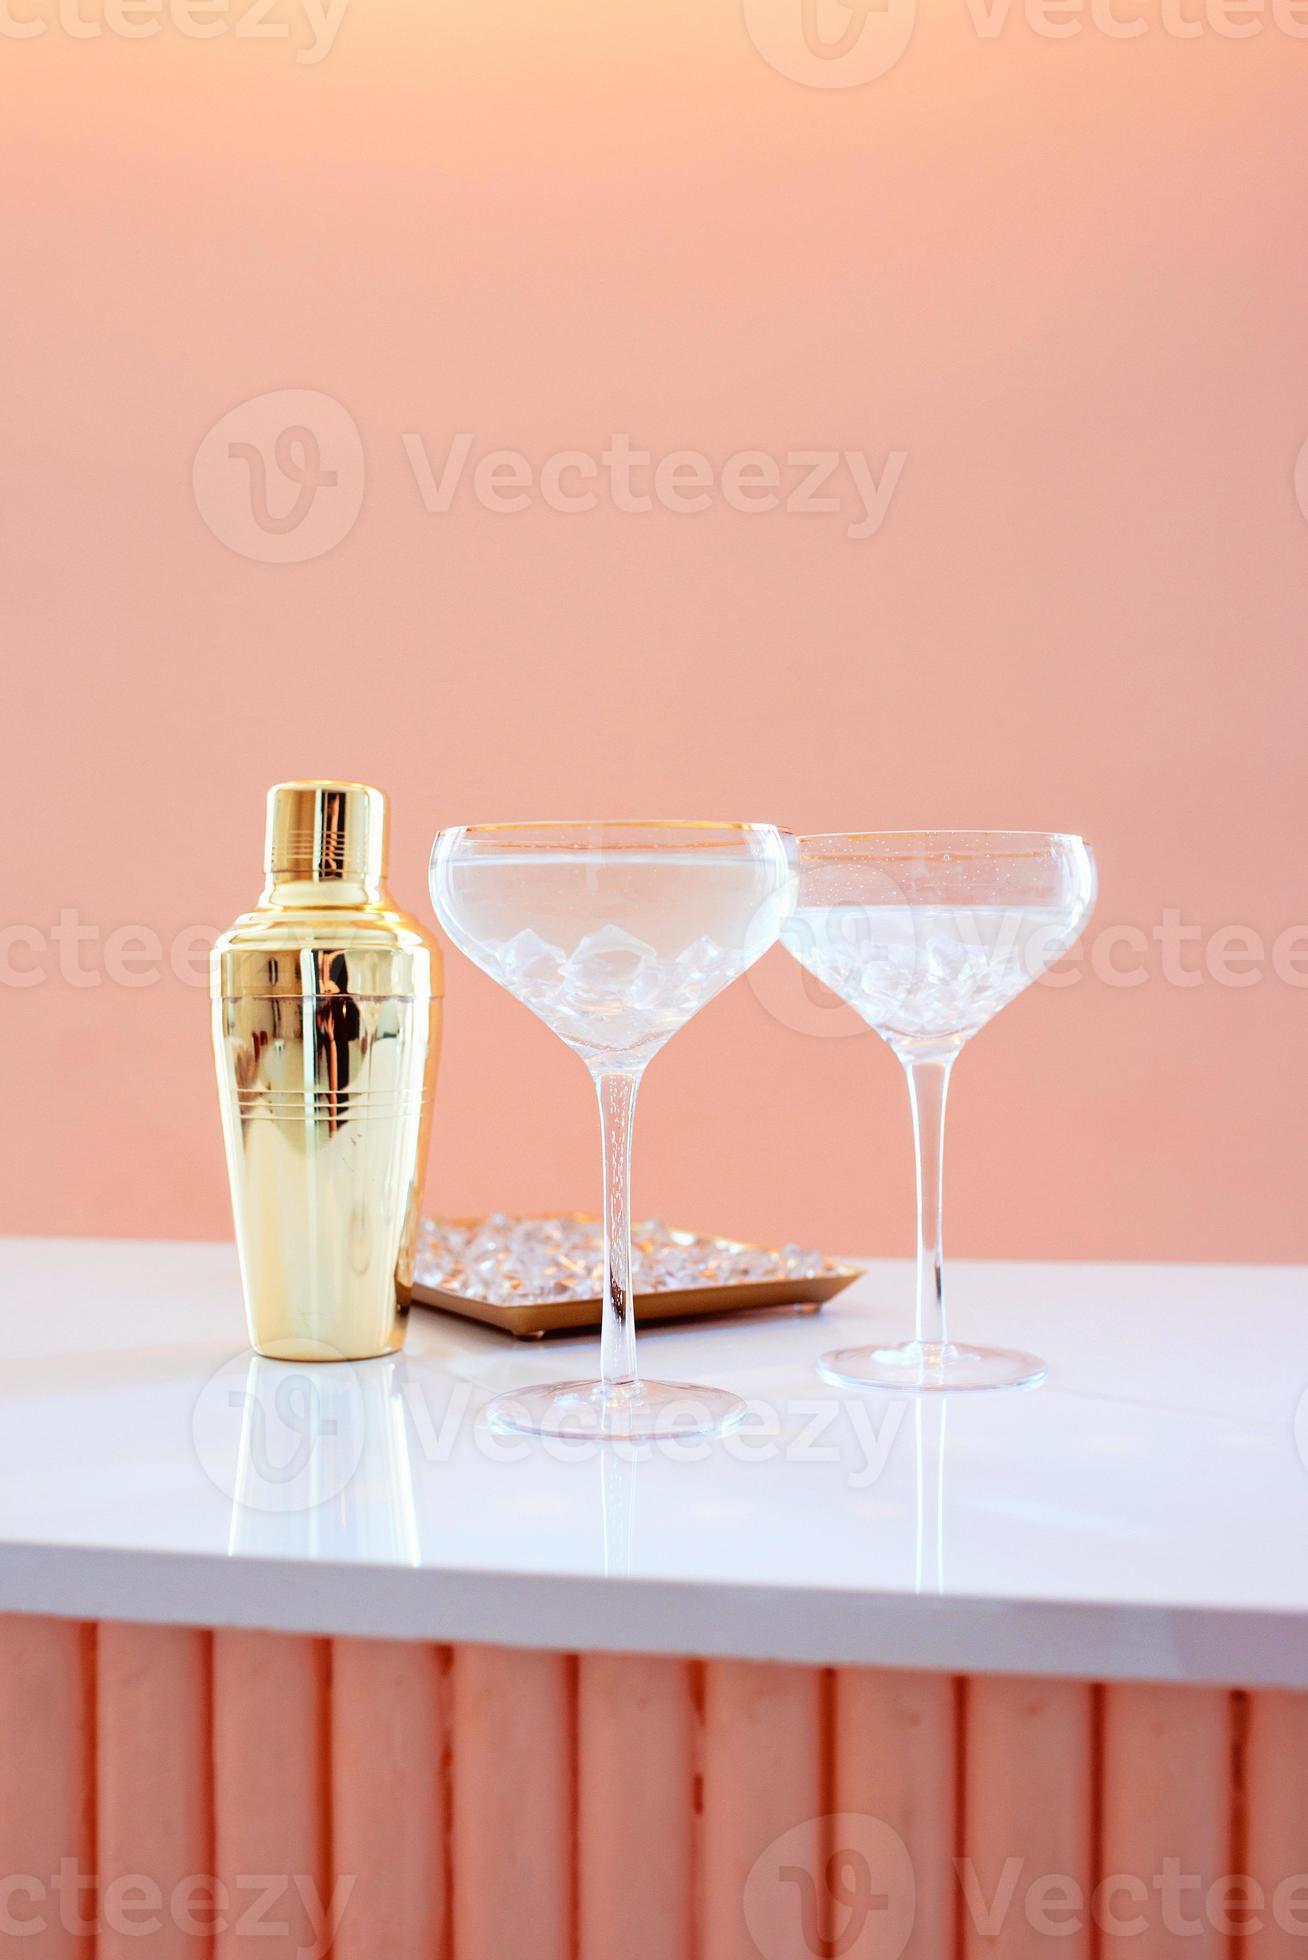 https://static.vecteezy.com/ti/photos-gratuite/p2/5454280-golden-shaker-verre-decanteur-verres-elegants-avec-cocktail-et-glace-sur-fond-beige-alcohol-party-hotel-bar-concept-photo.jpg